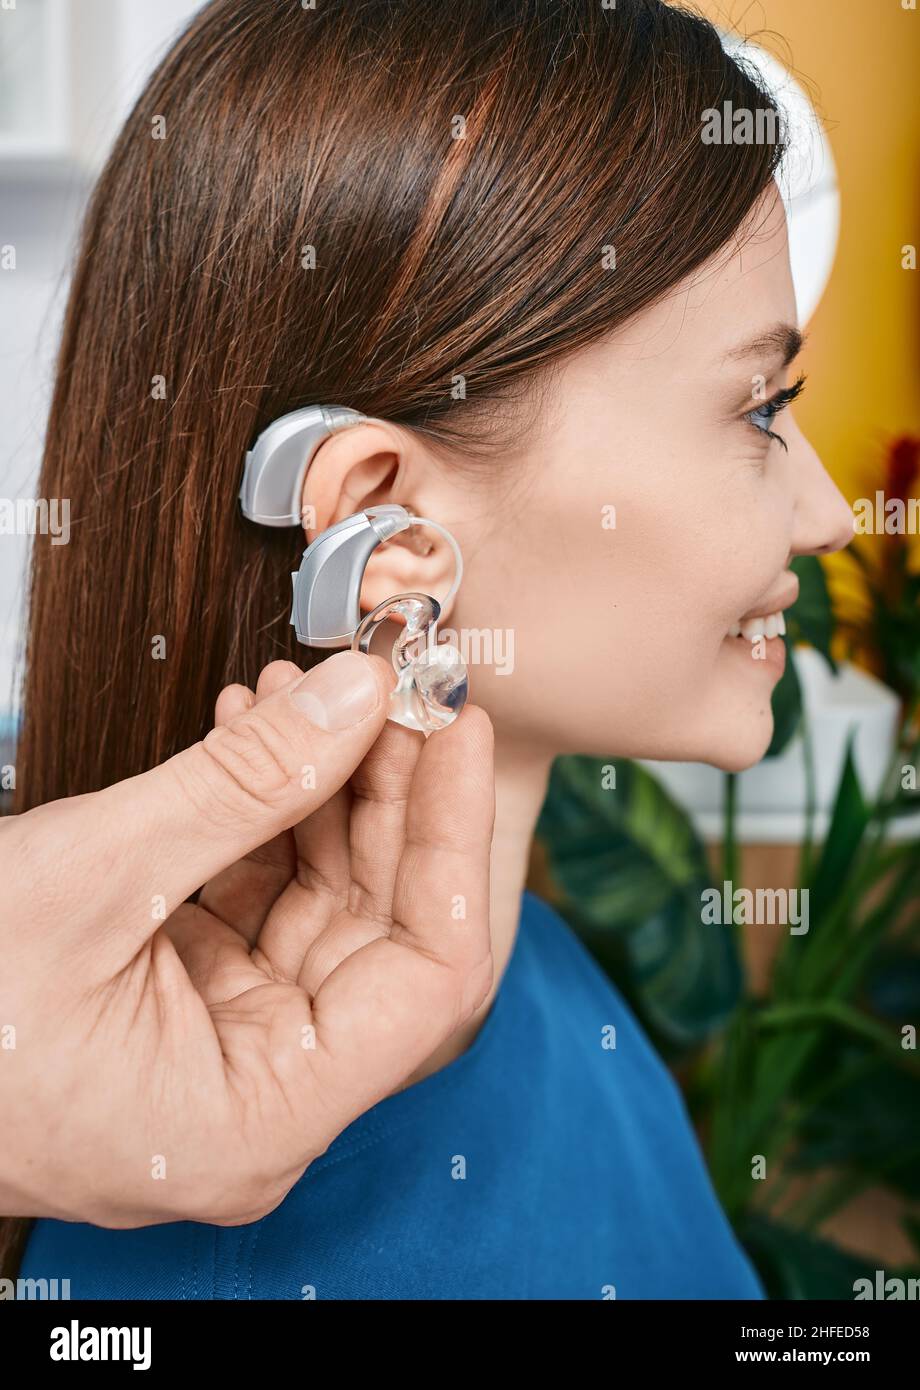 Une audiologiste présente une prothèse auditive pour une femme malentendante afin de traiter sa surdité en gros plan.Audiologie, solutions auditives Banque D'Images